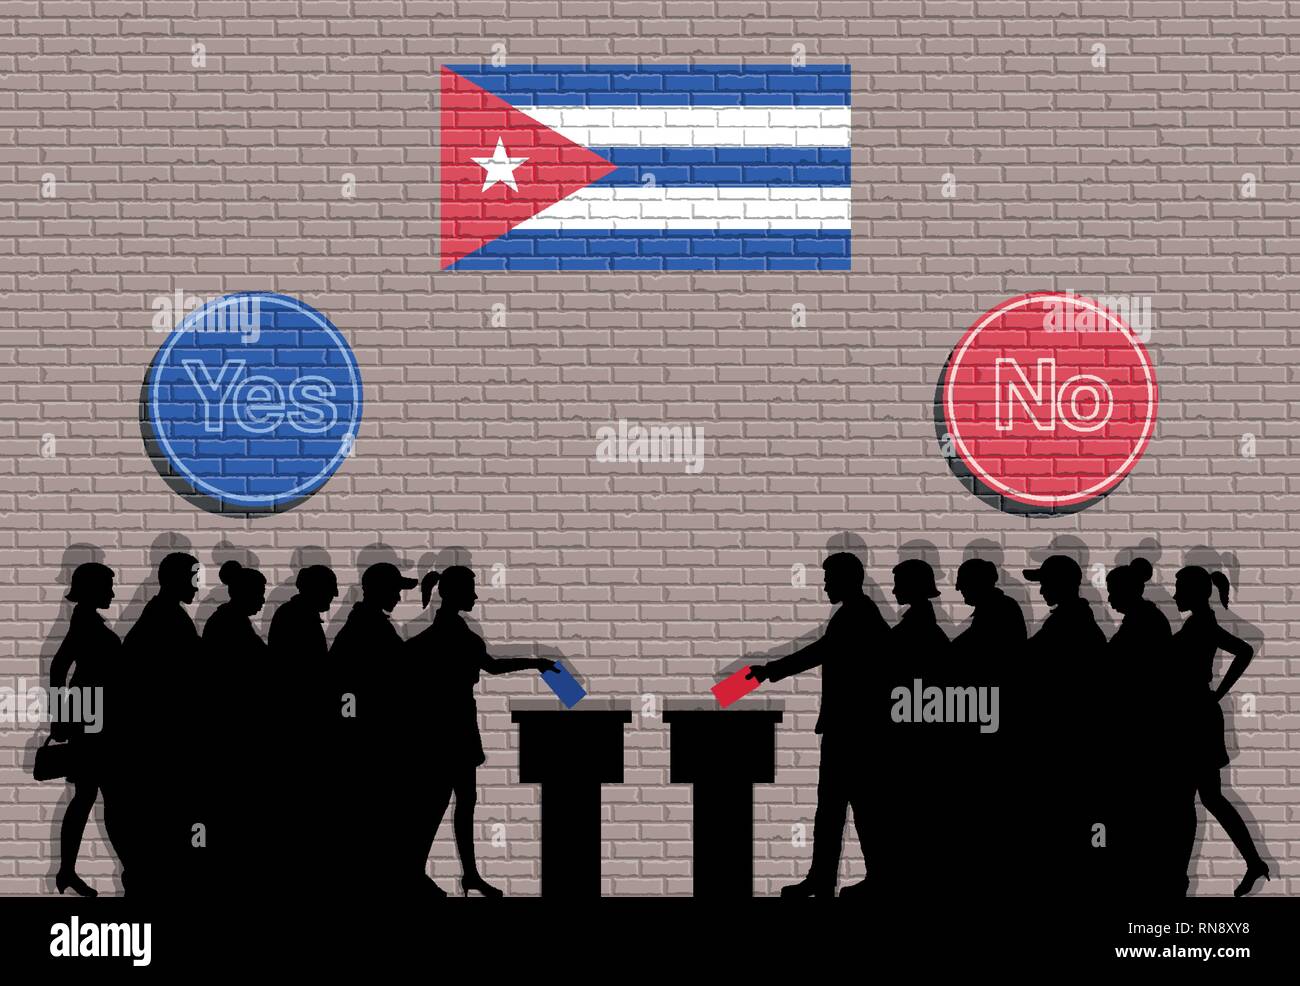 Kubanische Wähler Menge Silhouette in Kuba Wahl mit Ja und Nein zeichen Graffiti. Alle die Silhouette Objekte, Icons und Hintergrund sind in verschiedenen Layer Stock Vektor